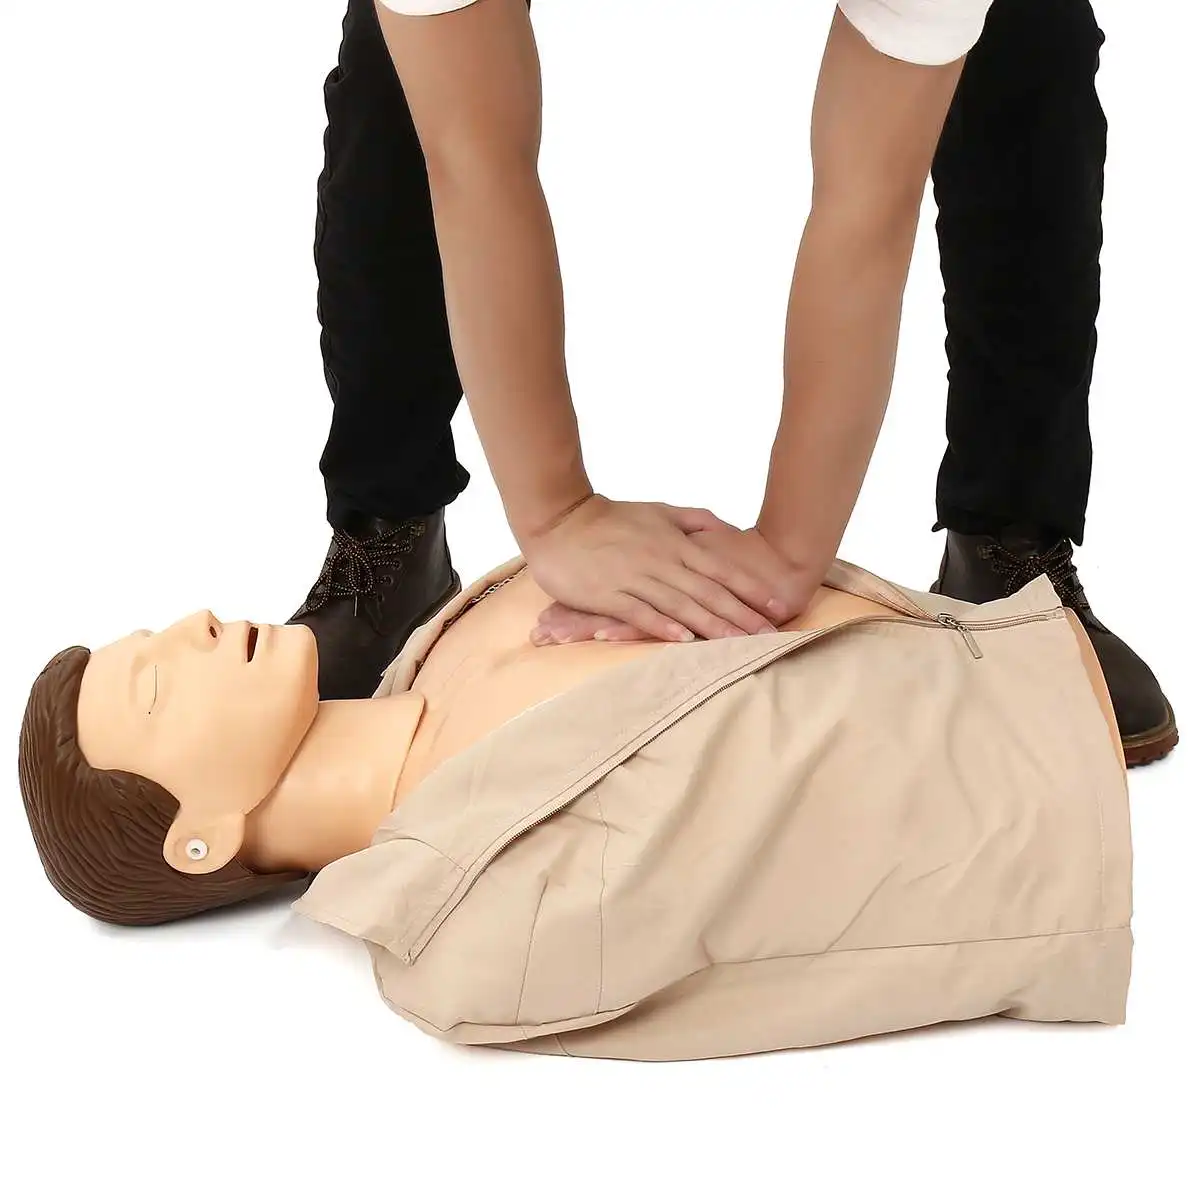 70x22x34 см Обхват груди: тренировочный манекен CPR Профессиональный сестринского Подготовки манекена медицинская модель человека тренировка скорой помощи новые модели